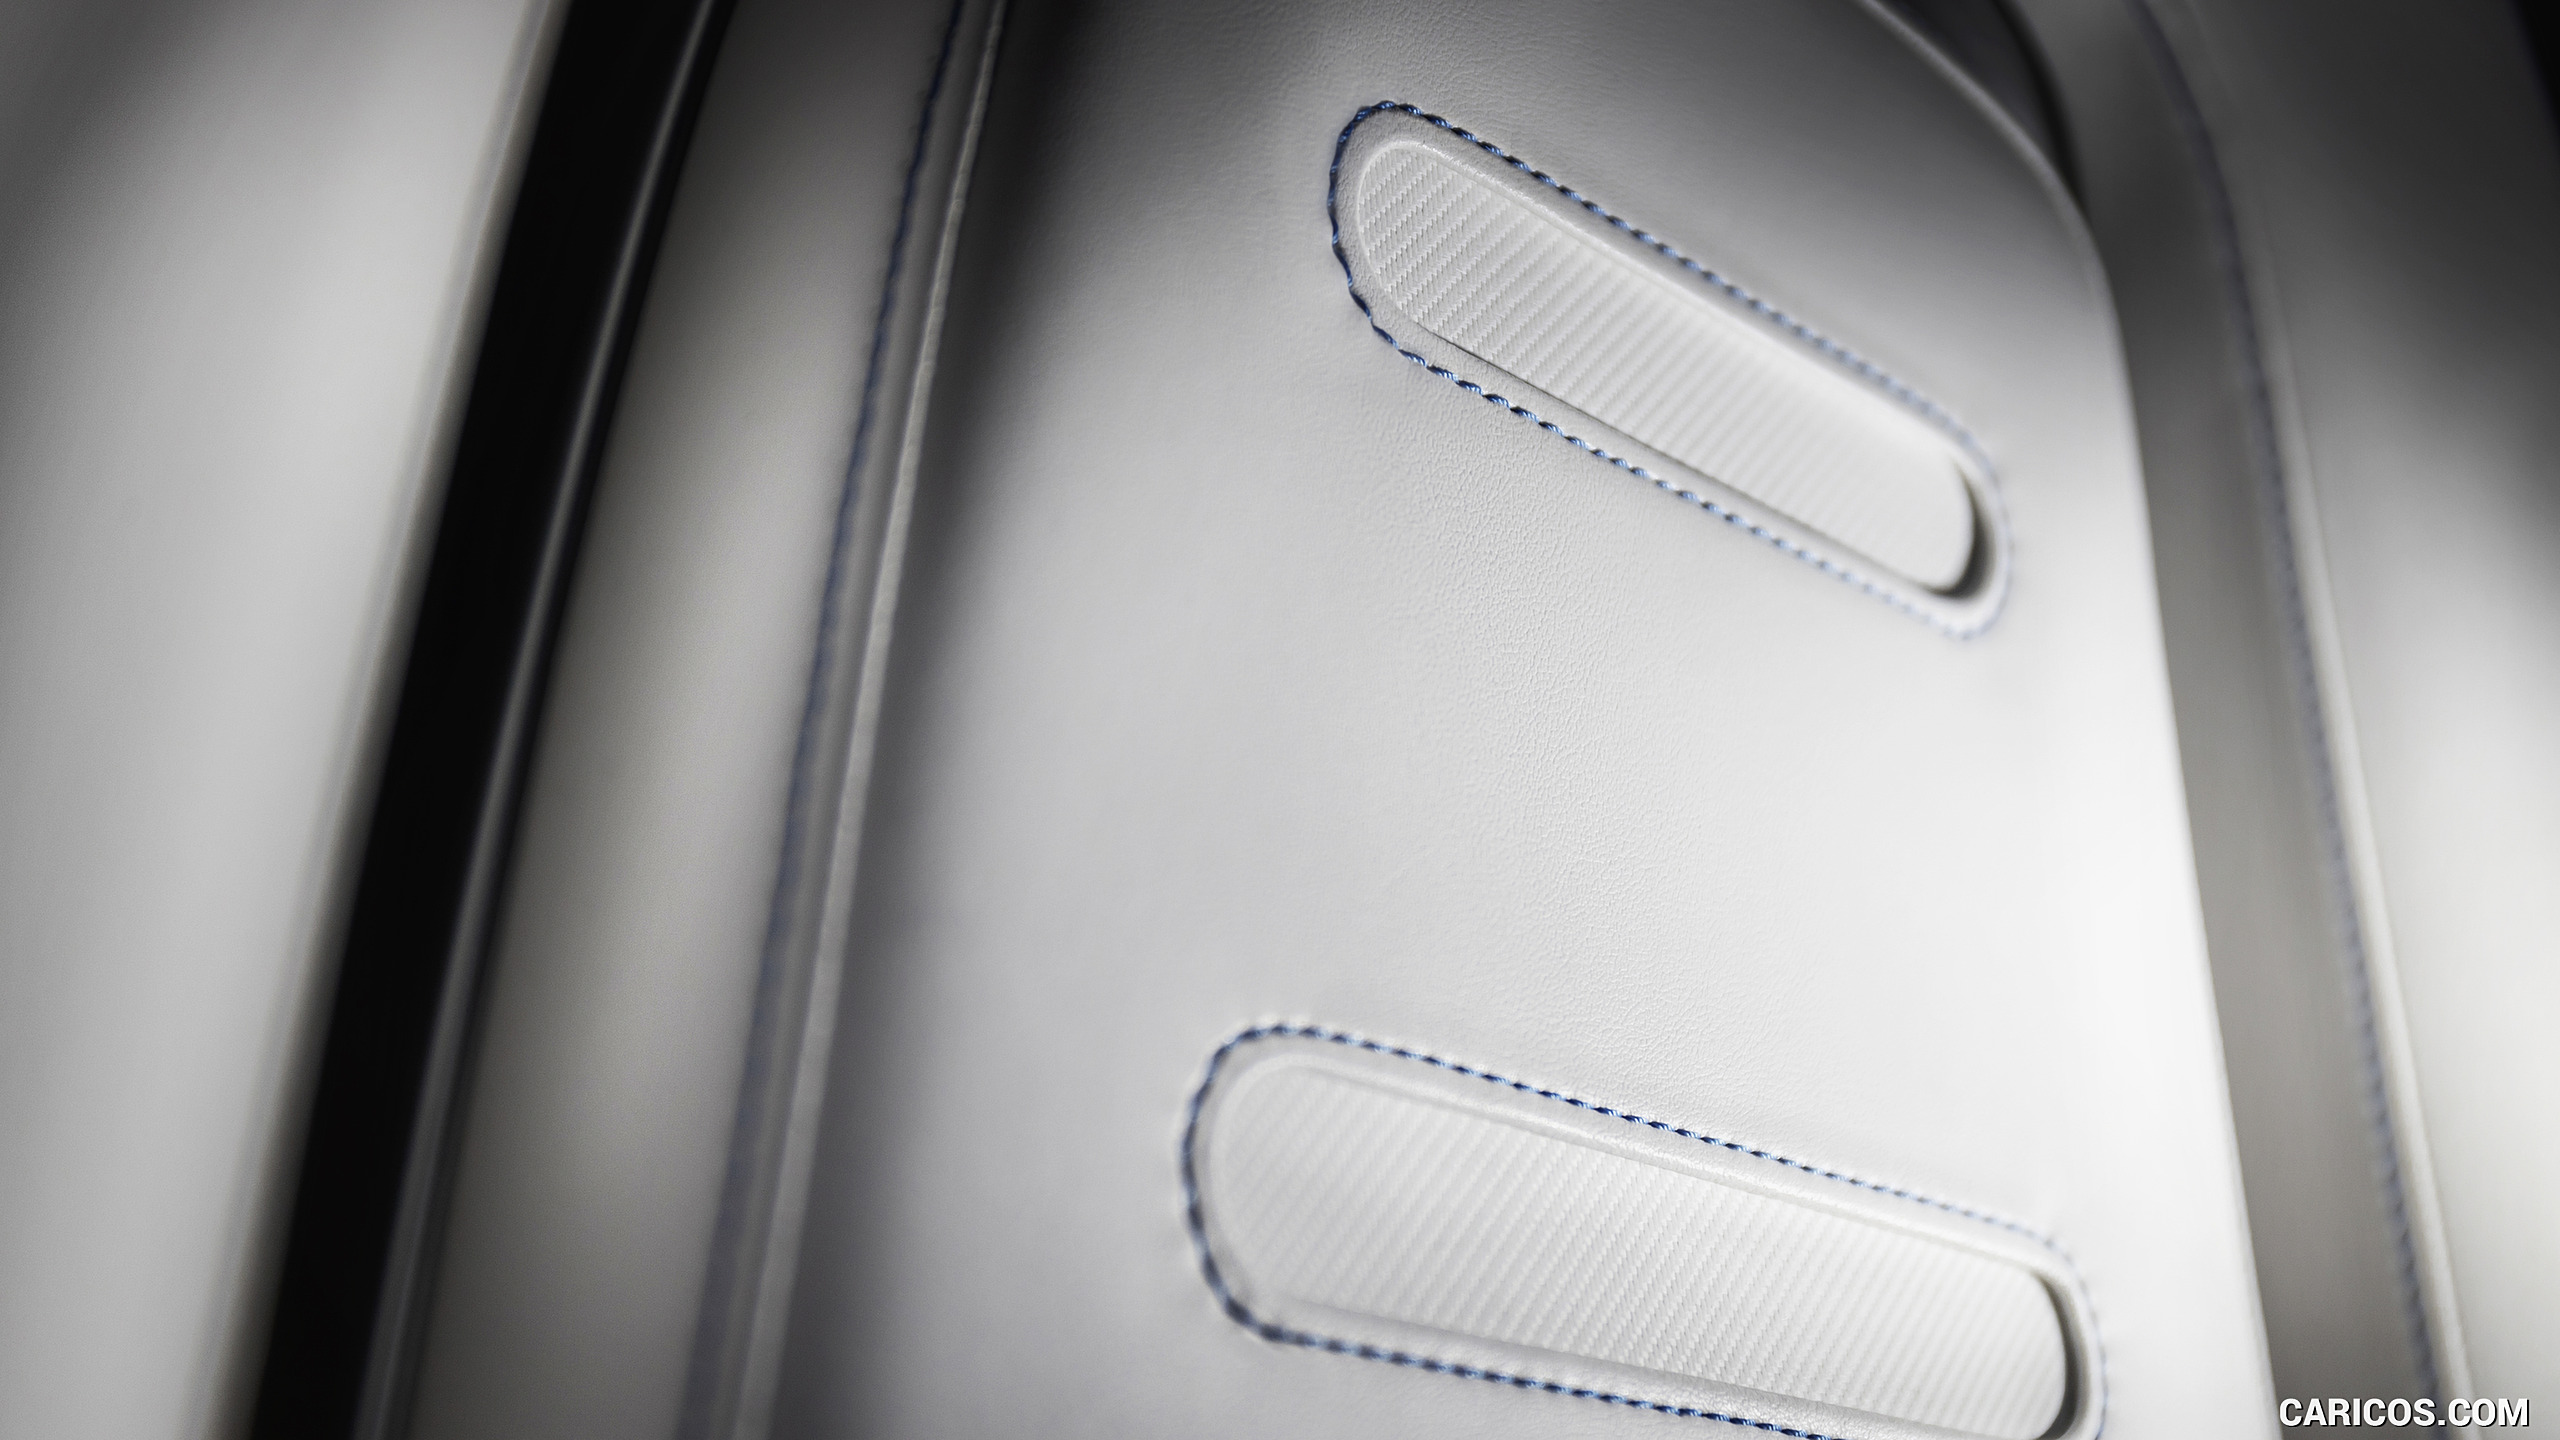 2022 Mercedes-Benz Vision EQXX - Interior, Seats, #53 of 146